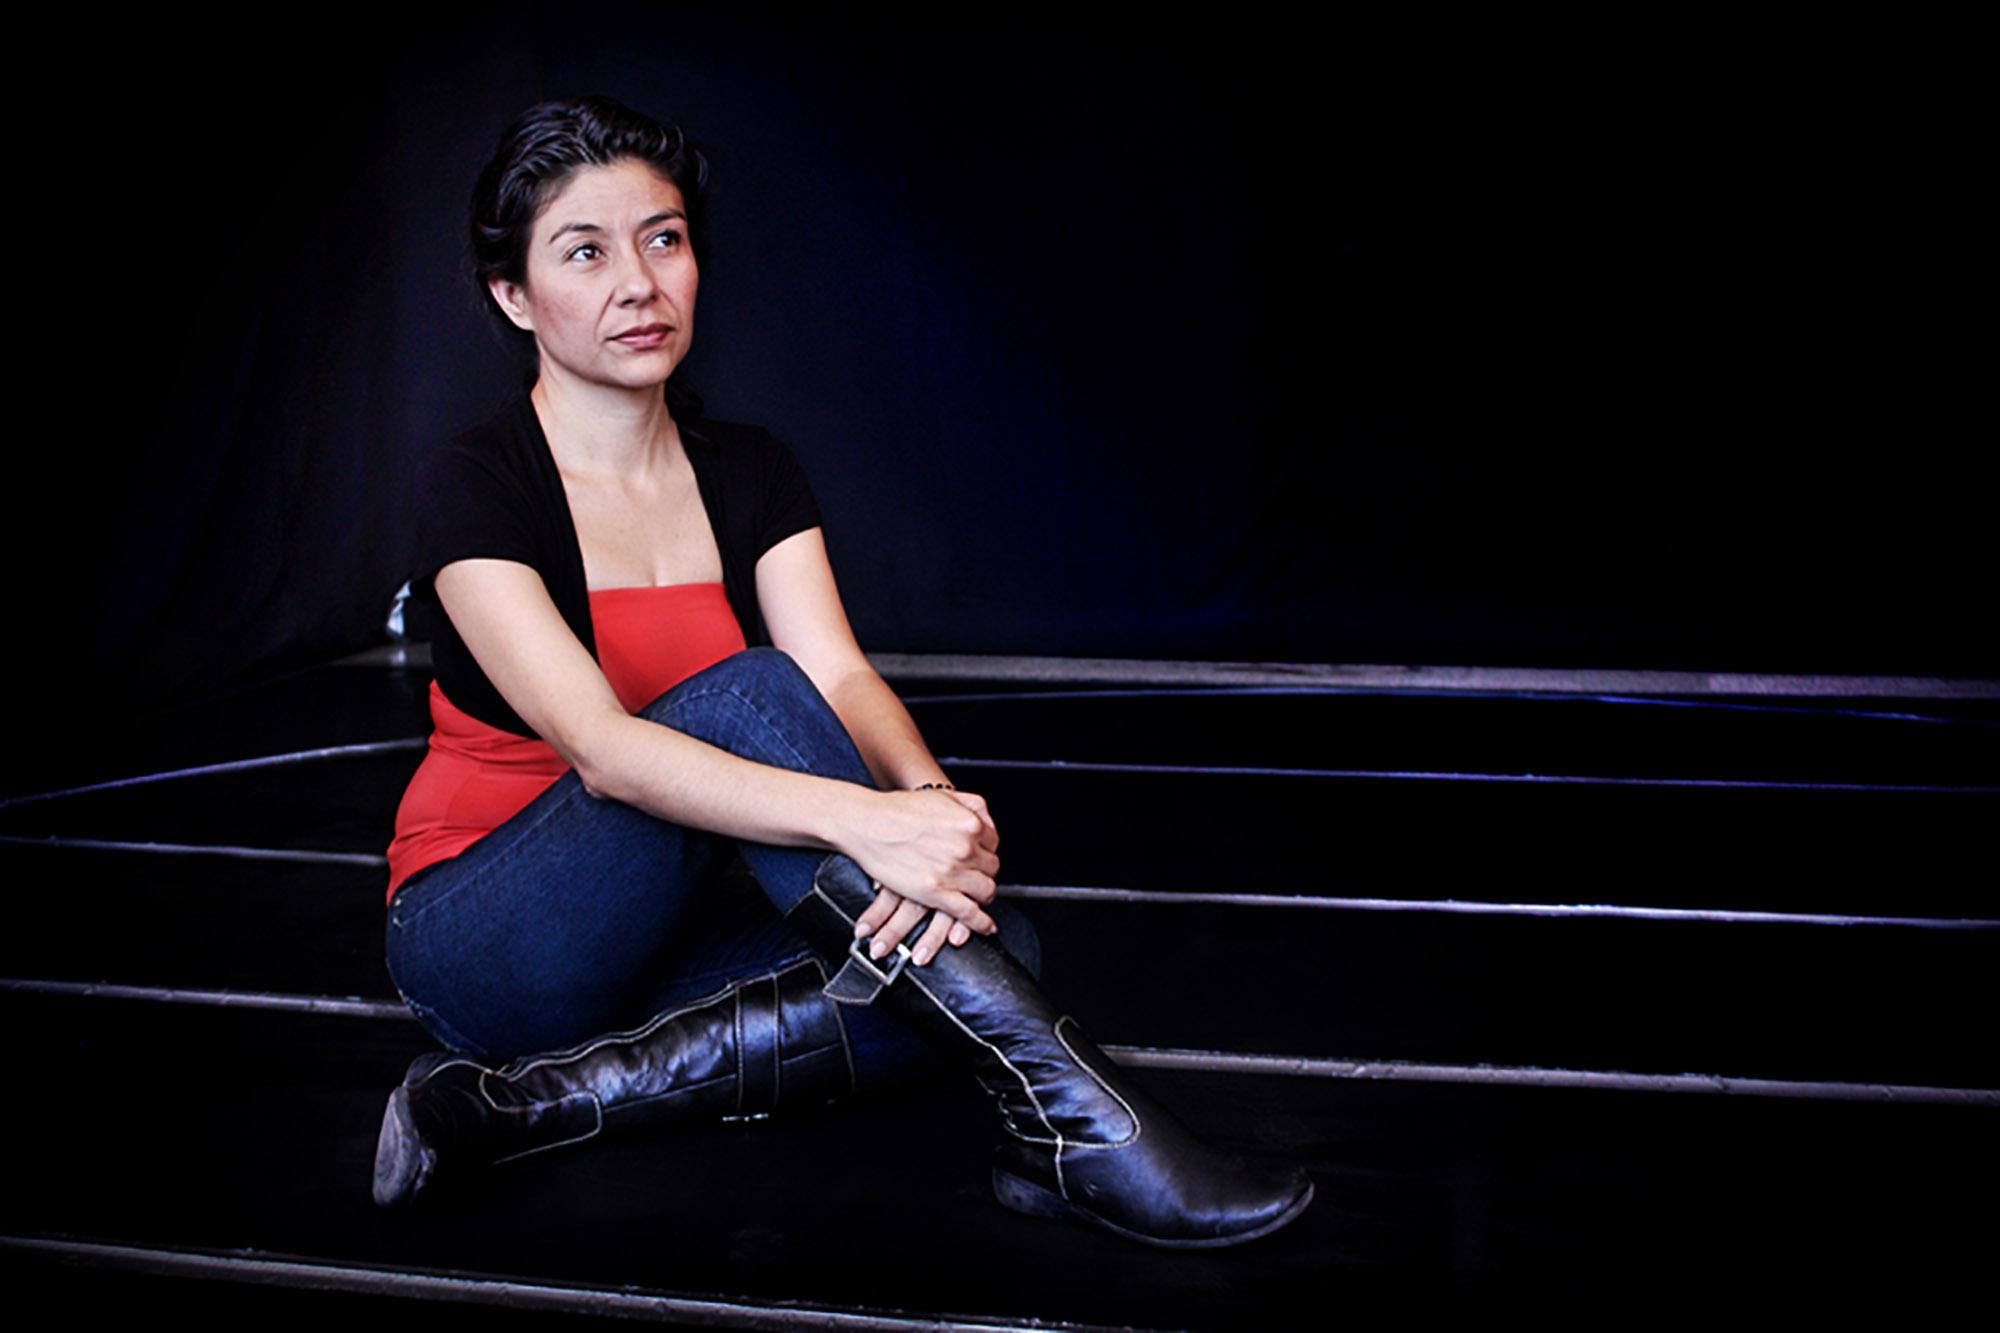 En noviembre 2012, la dramaturga y actriz Jorgelina Cerritos ganó, por unanimidad del jurado, la VI Bienal Internacional de Dramaturgia Femenina 